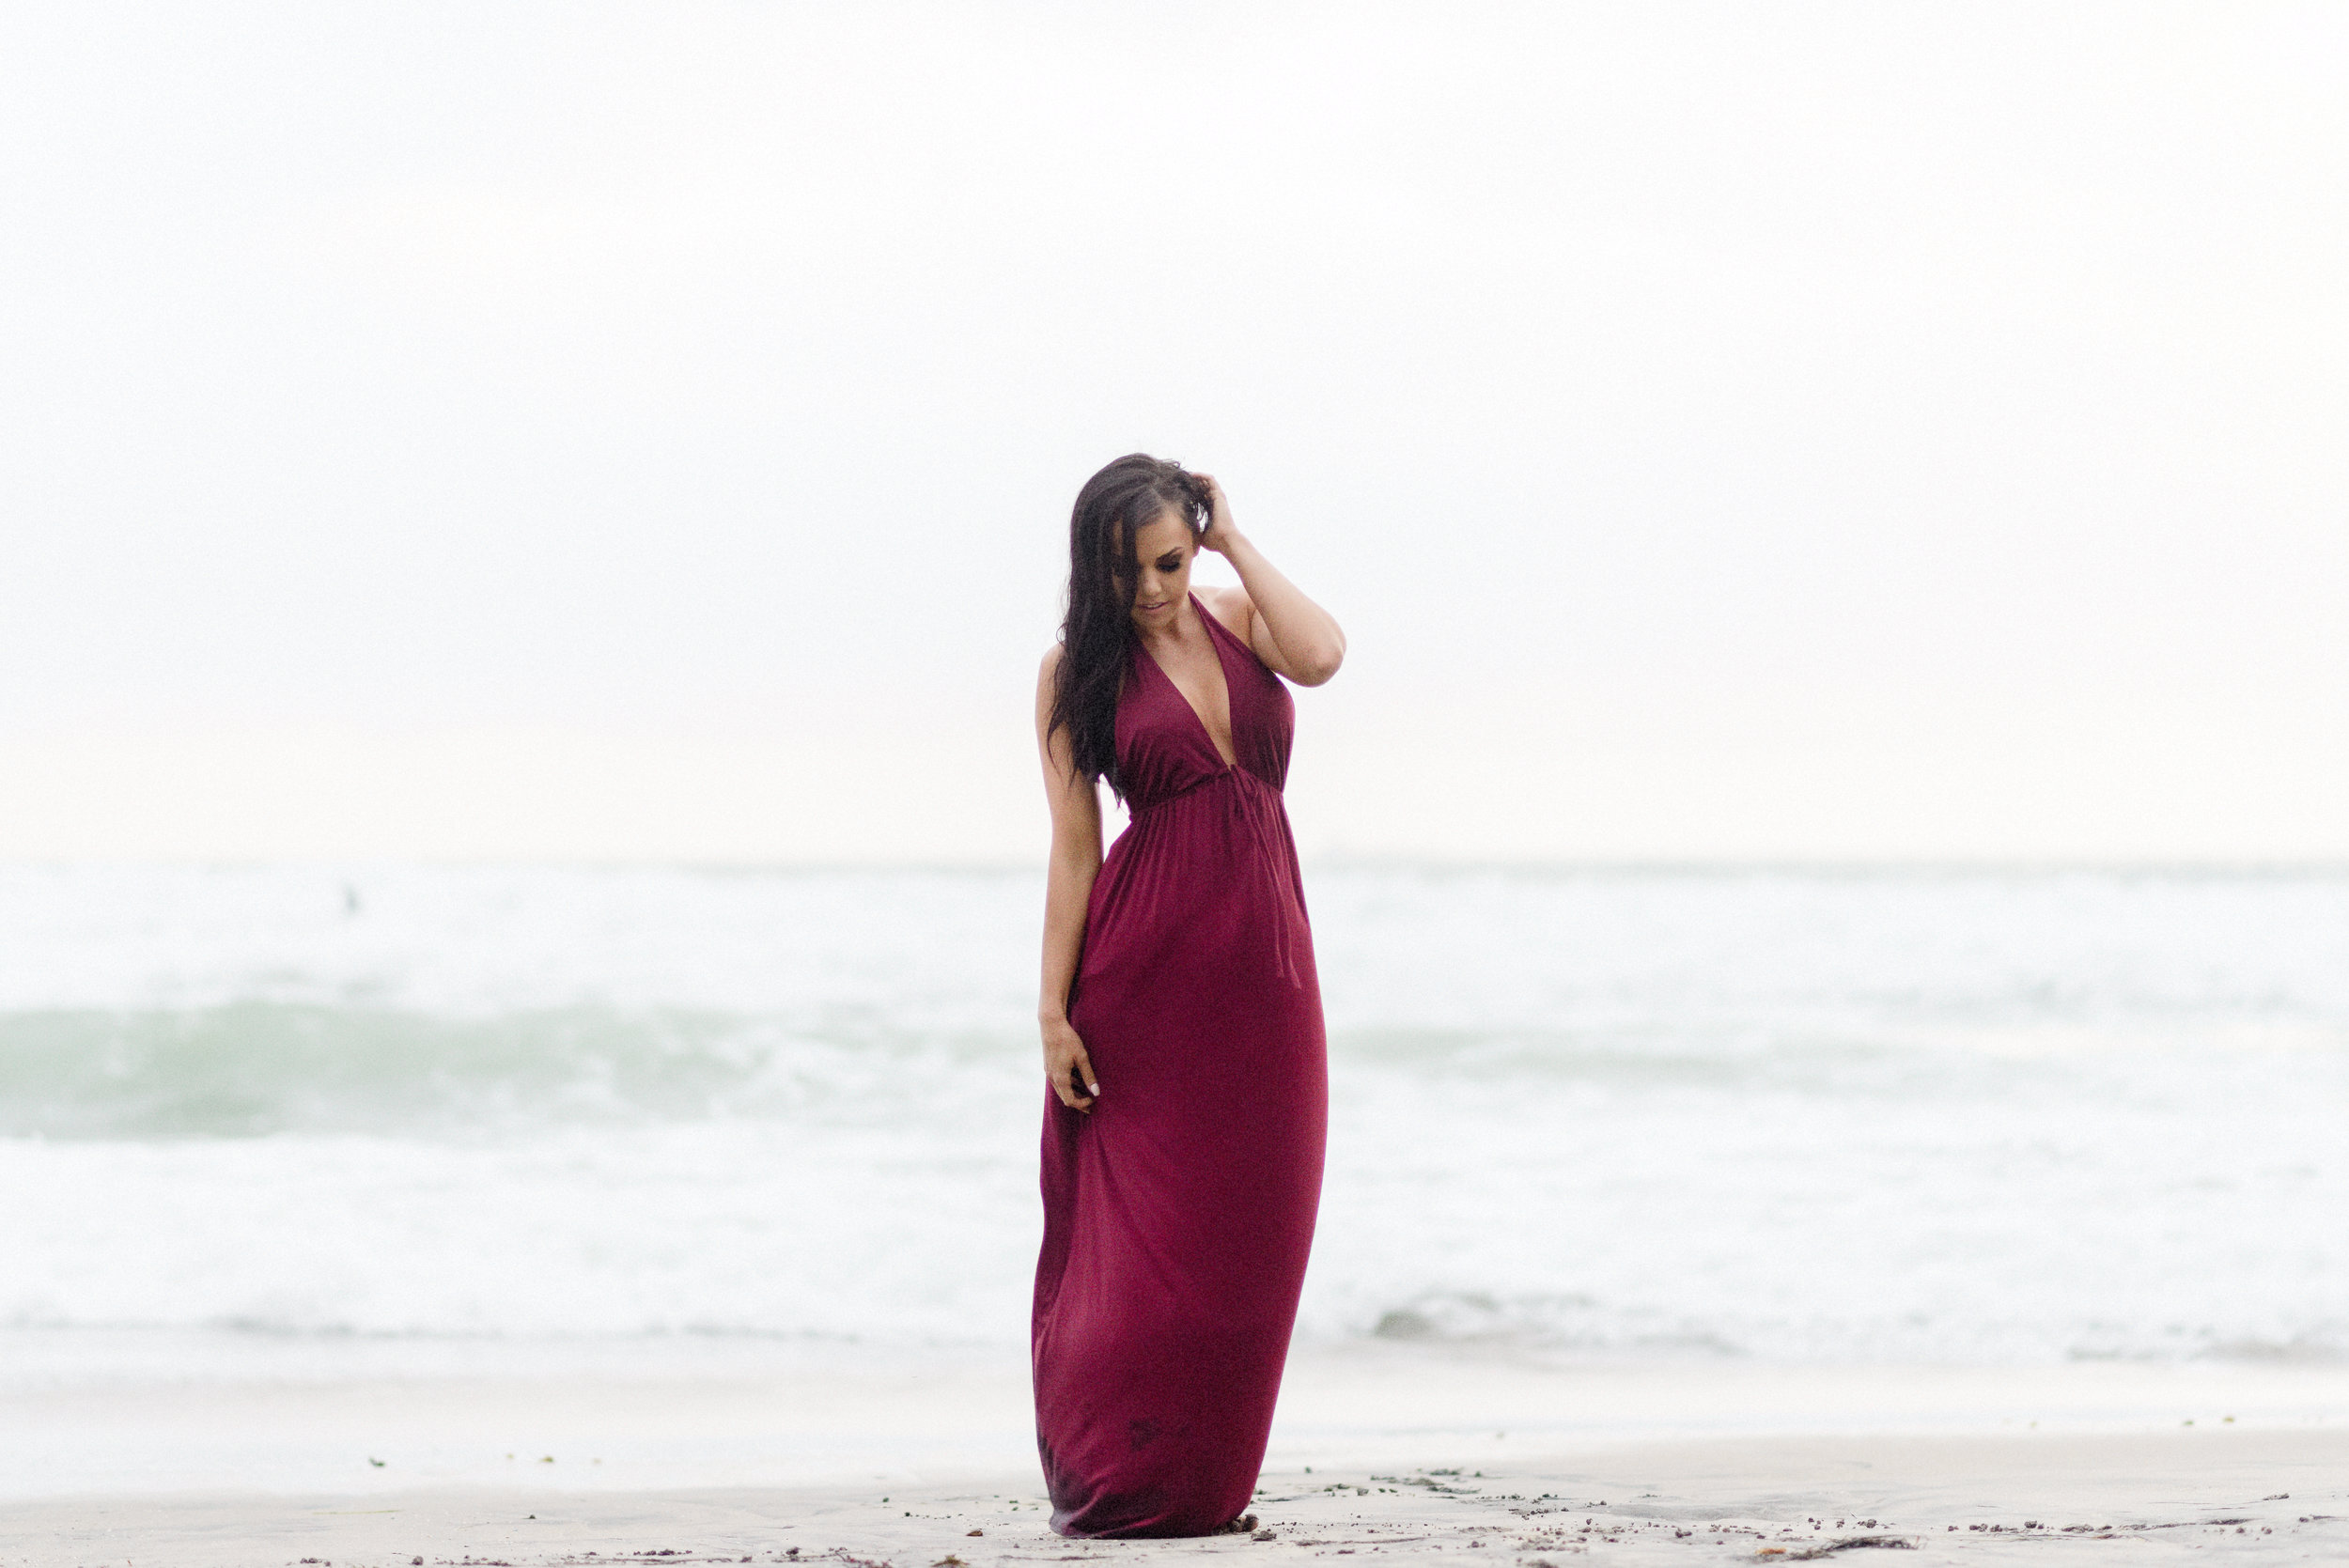 San Diego Portrait Photography | Fitness | Bikini Model | Beach 